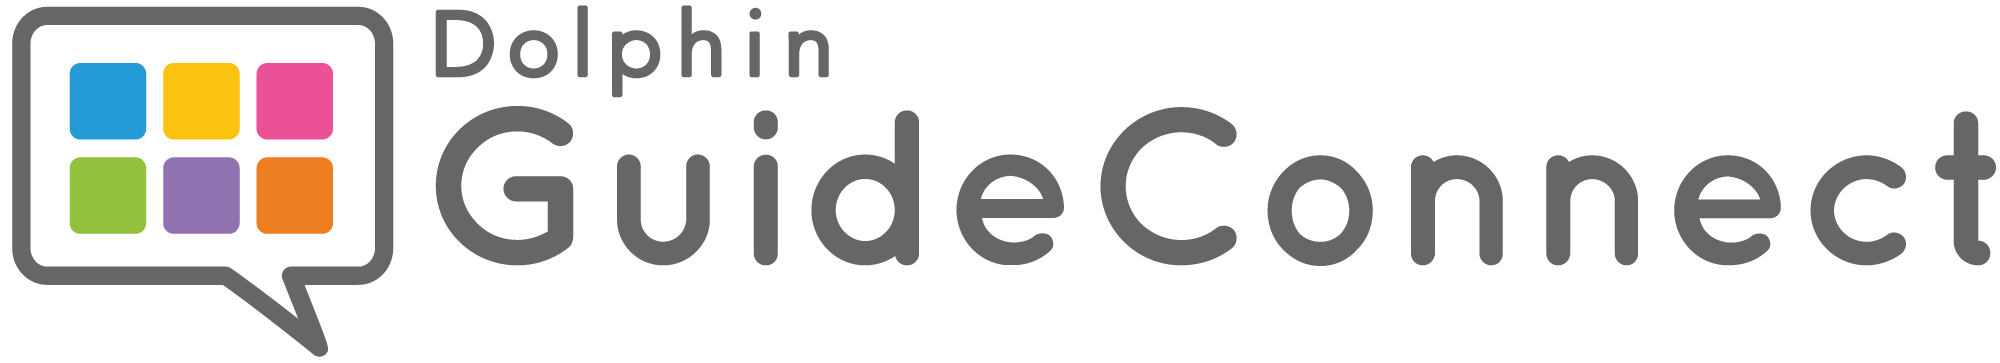 Das Bild zeigt das Logo des Herstellers von GuideConnect Dolphin Ltd.